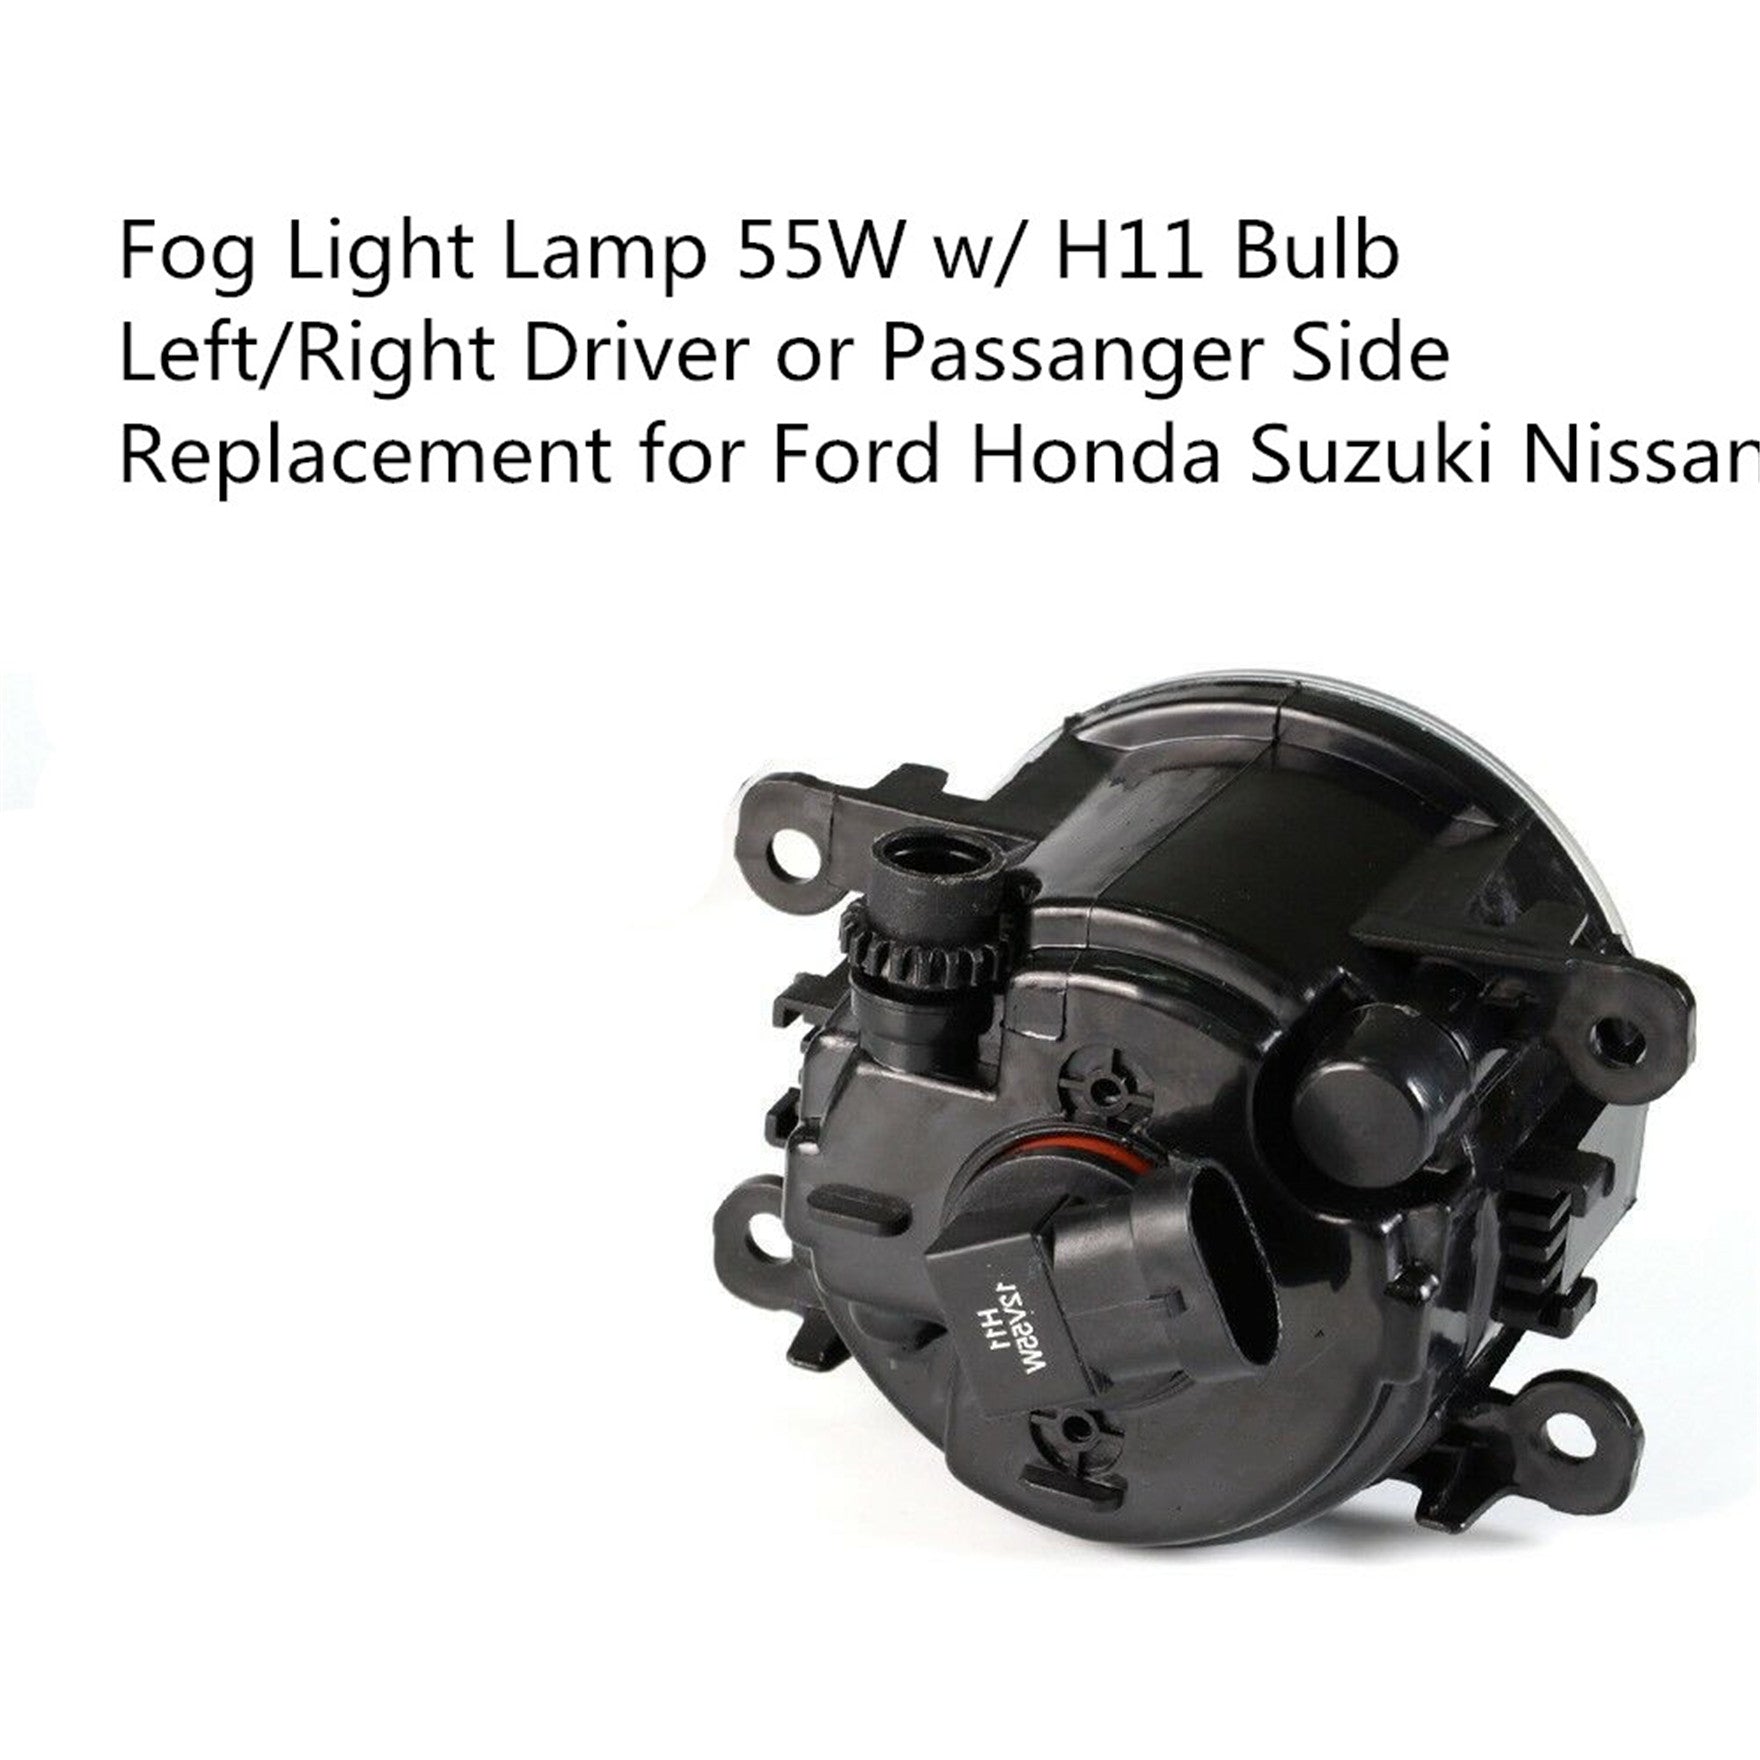 Left/Right Driver Passanger Side Fog Light Lamp 55W w/ H11 Bulb for Ford Honda